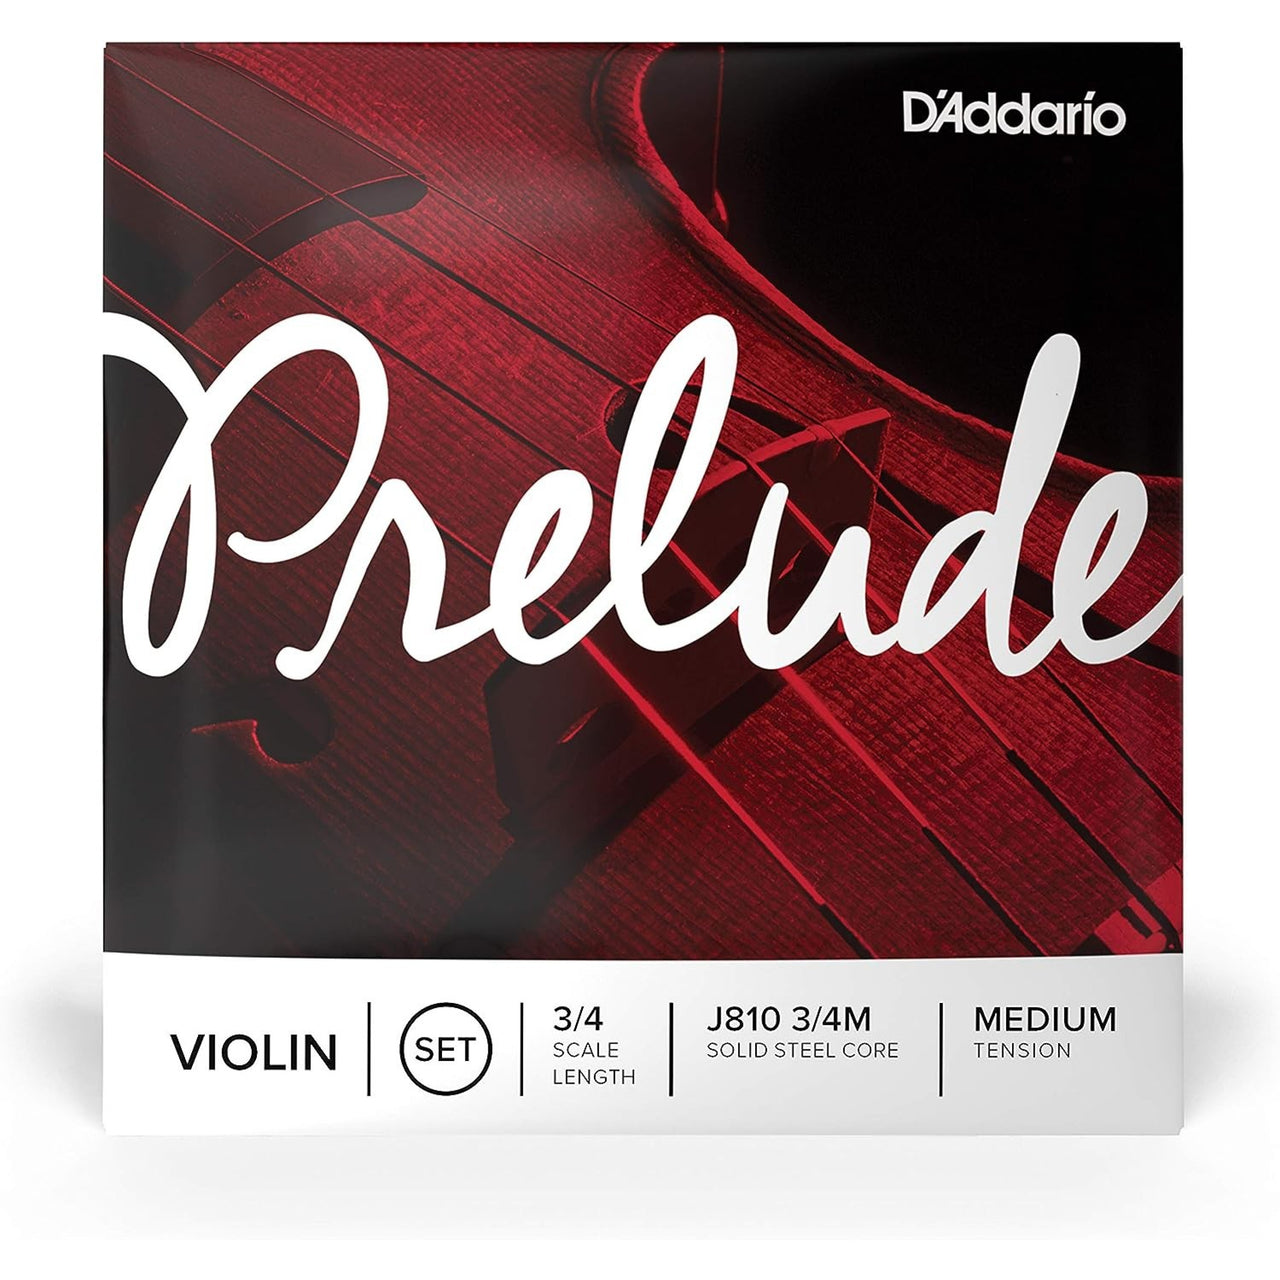 Juego De Cuerdas D Addario Para Violin 4/4 Prelude, J-810 4/4m